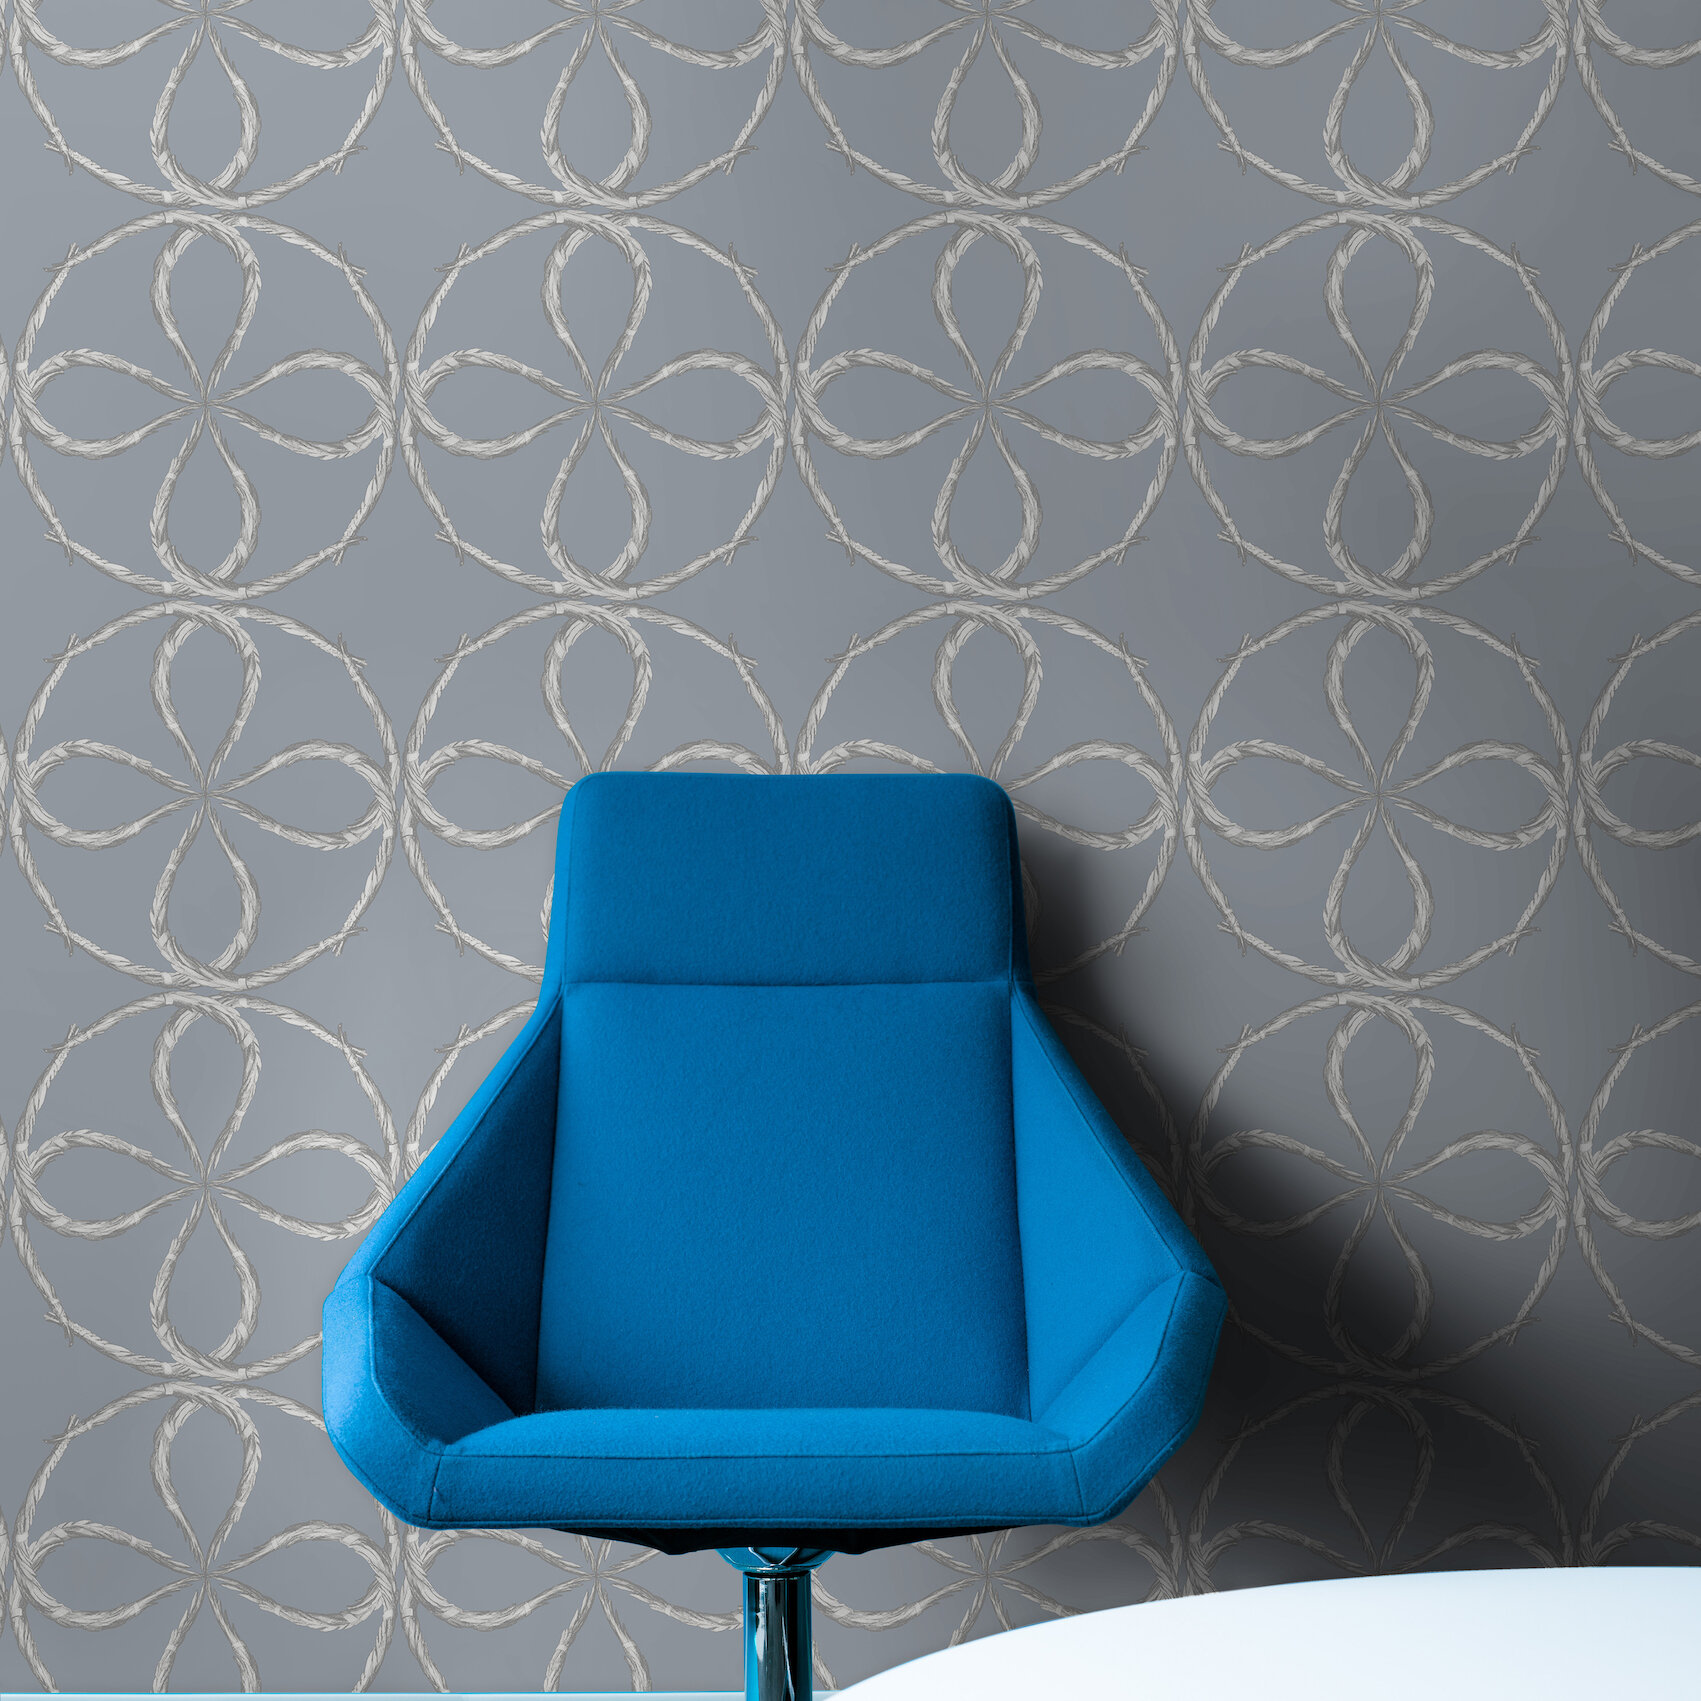 Quatrefoil - Silver, Antique Style Wallpaper, Blue Armchair, Studio DeSimoneWayland